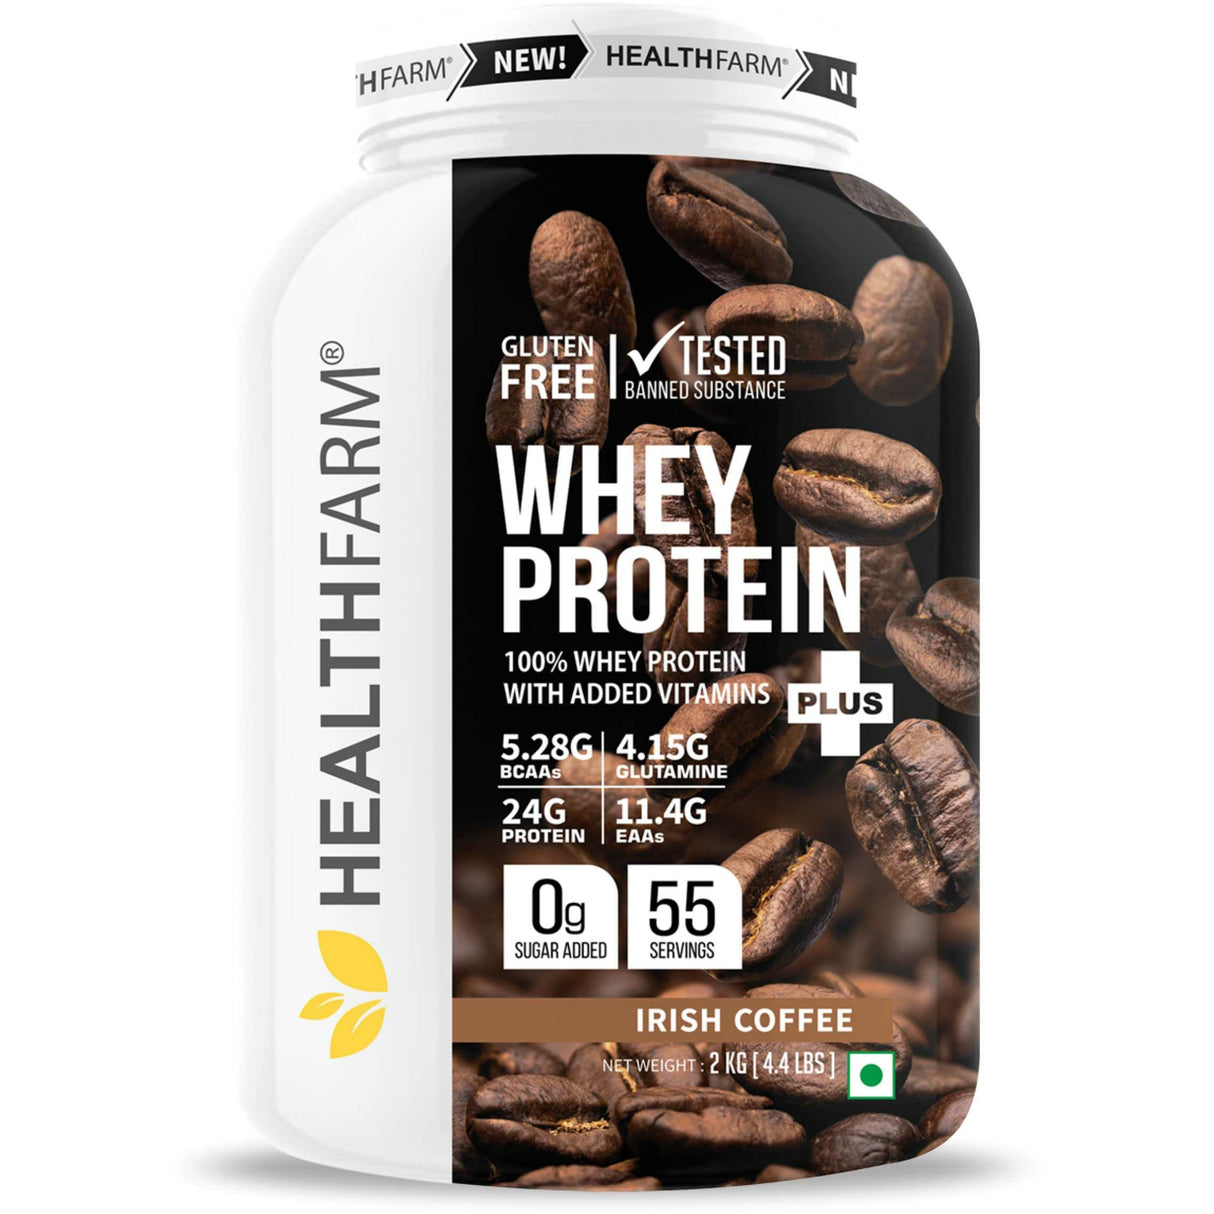 HealthFarm Whey Protein Plus